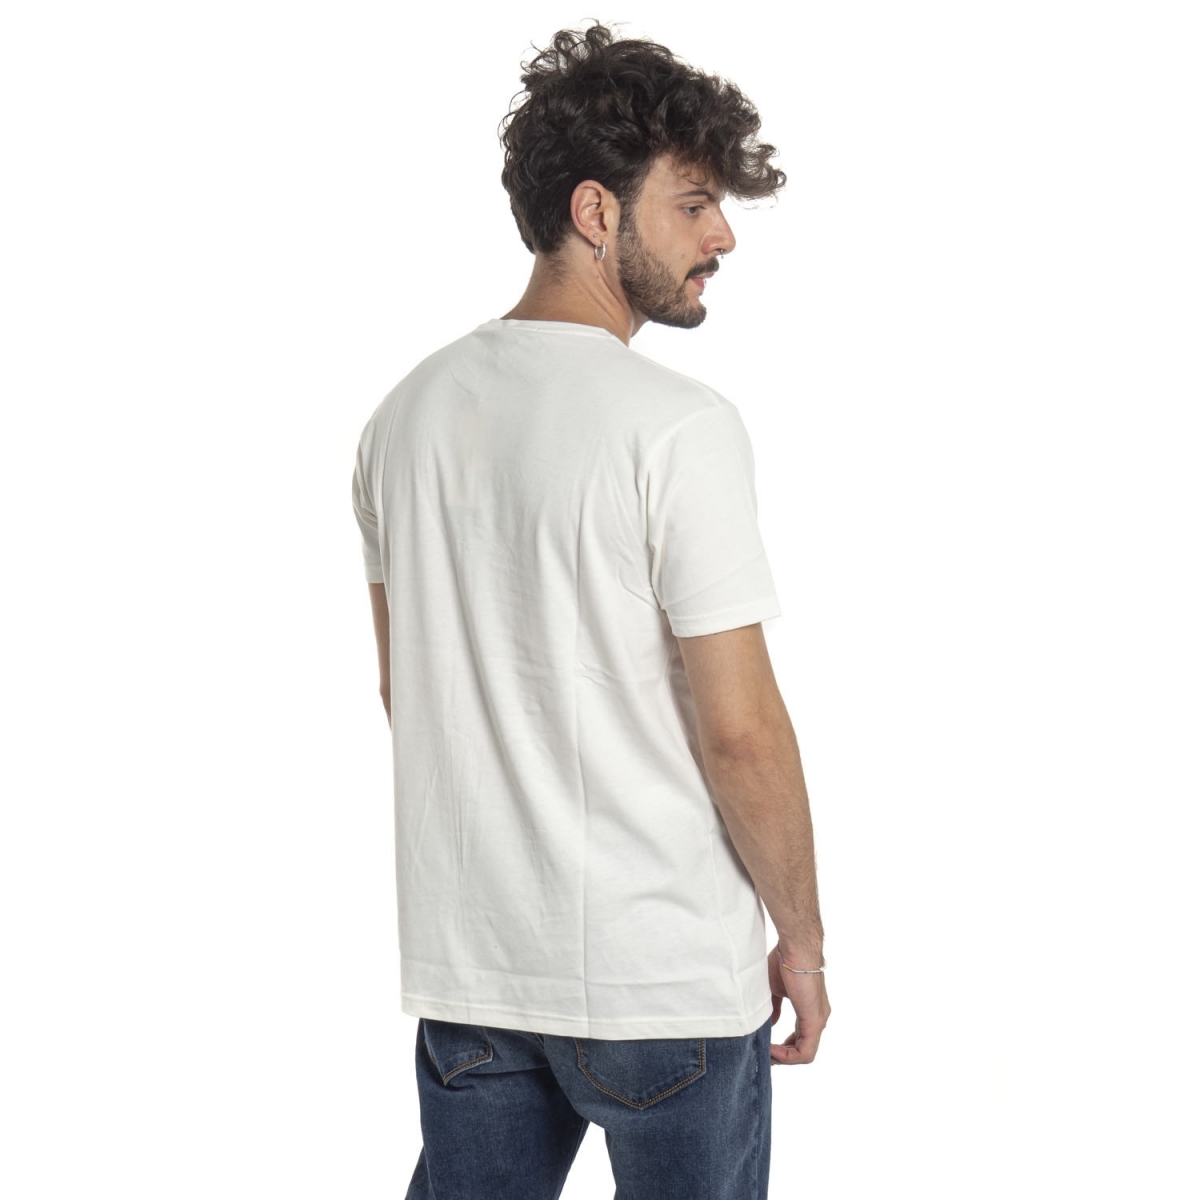 Kleidung T-shirt mann T-Shirt LPX16-32 LANDEK PARK Cafedelmar Shop